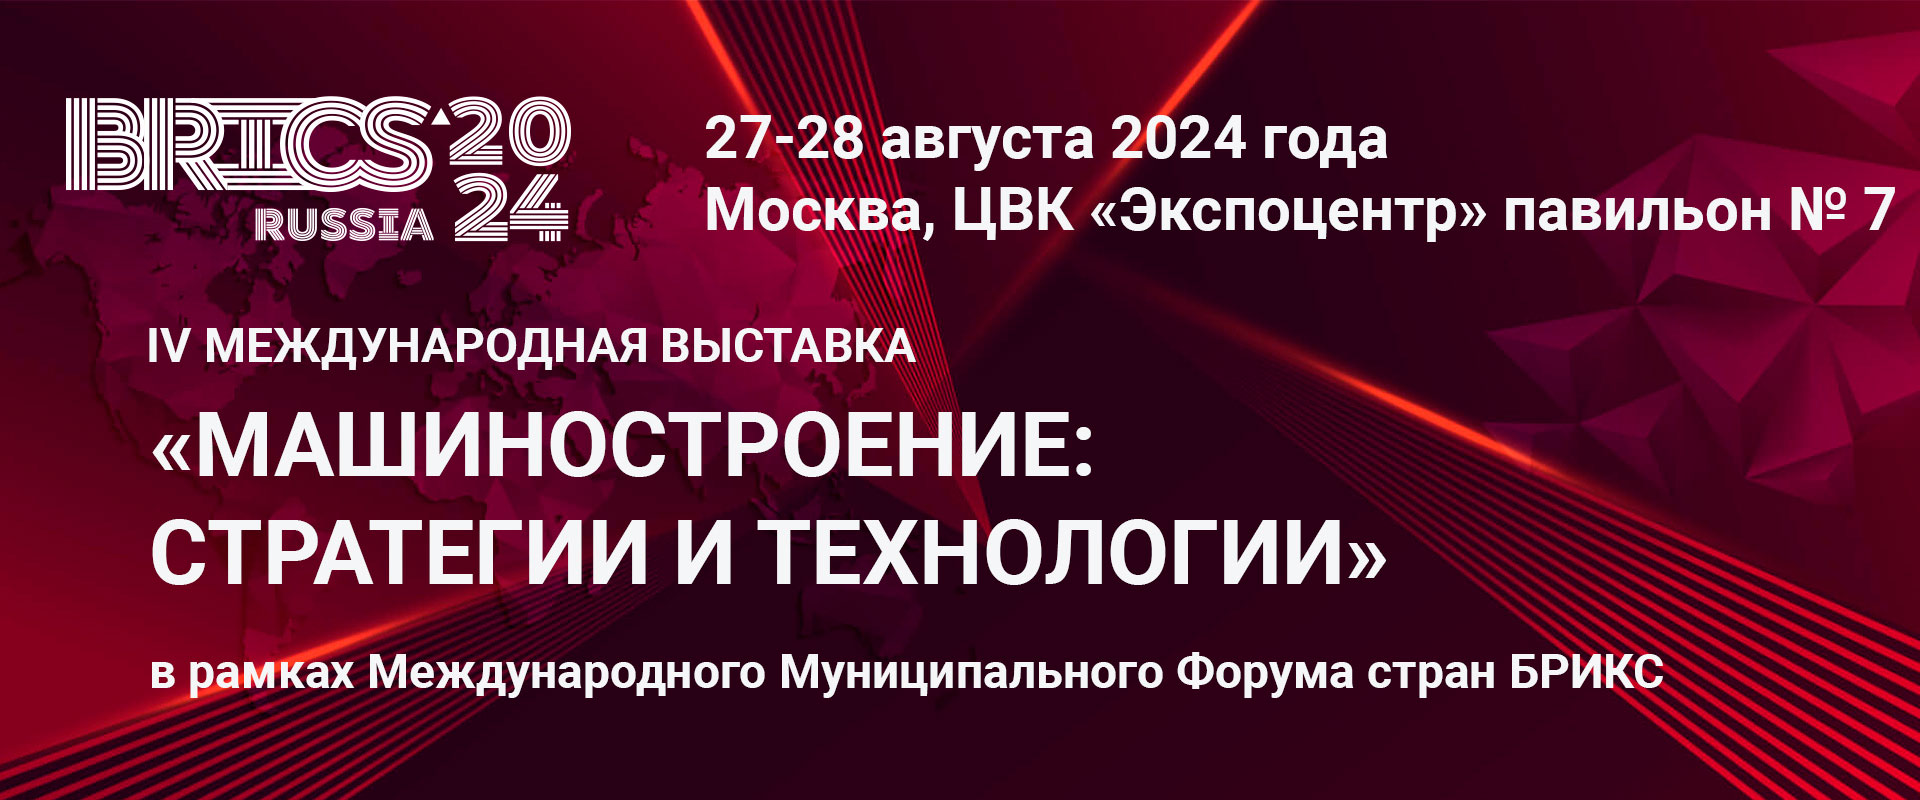 Международная выставка "Машиностроение: стратегии и технологии 2024"